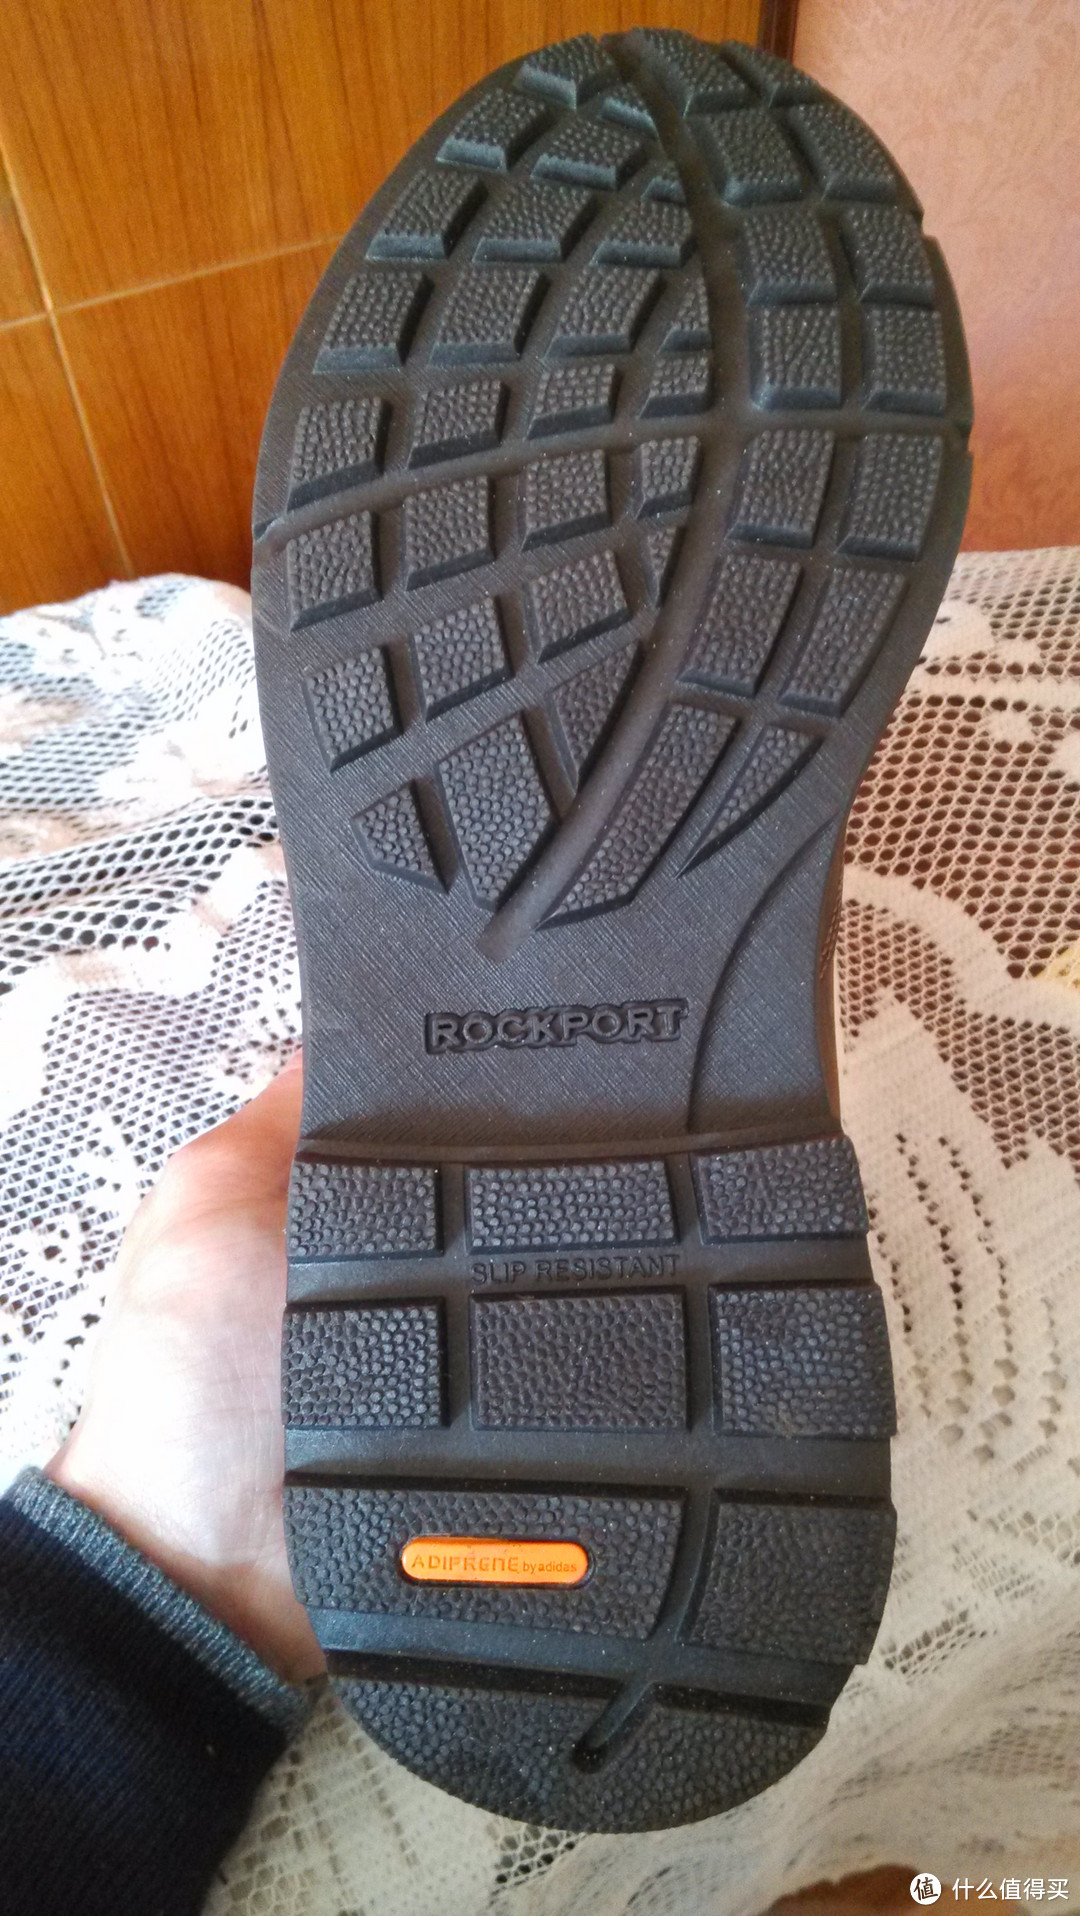 过年犒劳辛苦一年的双脚：Rockport 乐步 Rugged Bucks Mudguard Waterproof Boot 男鞋